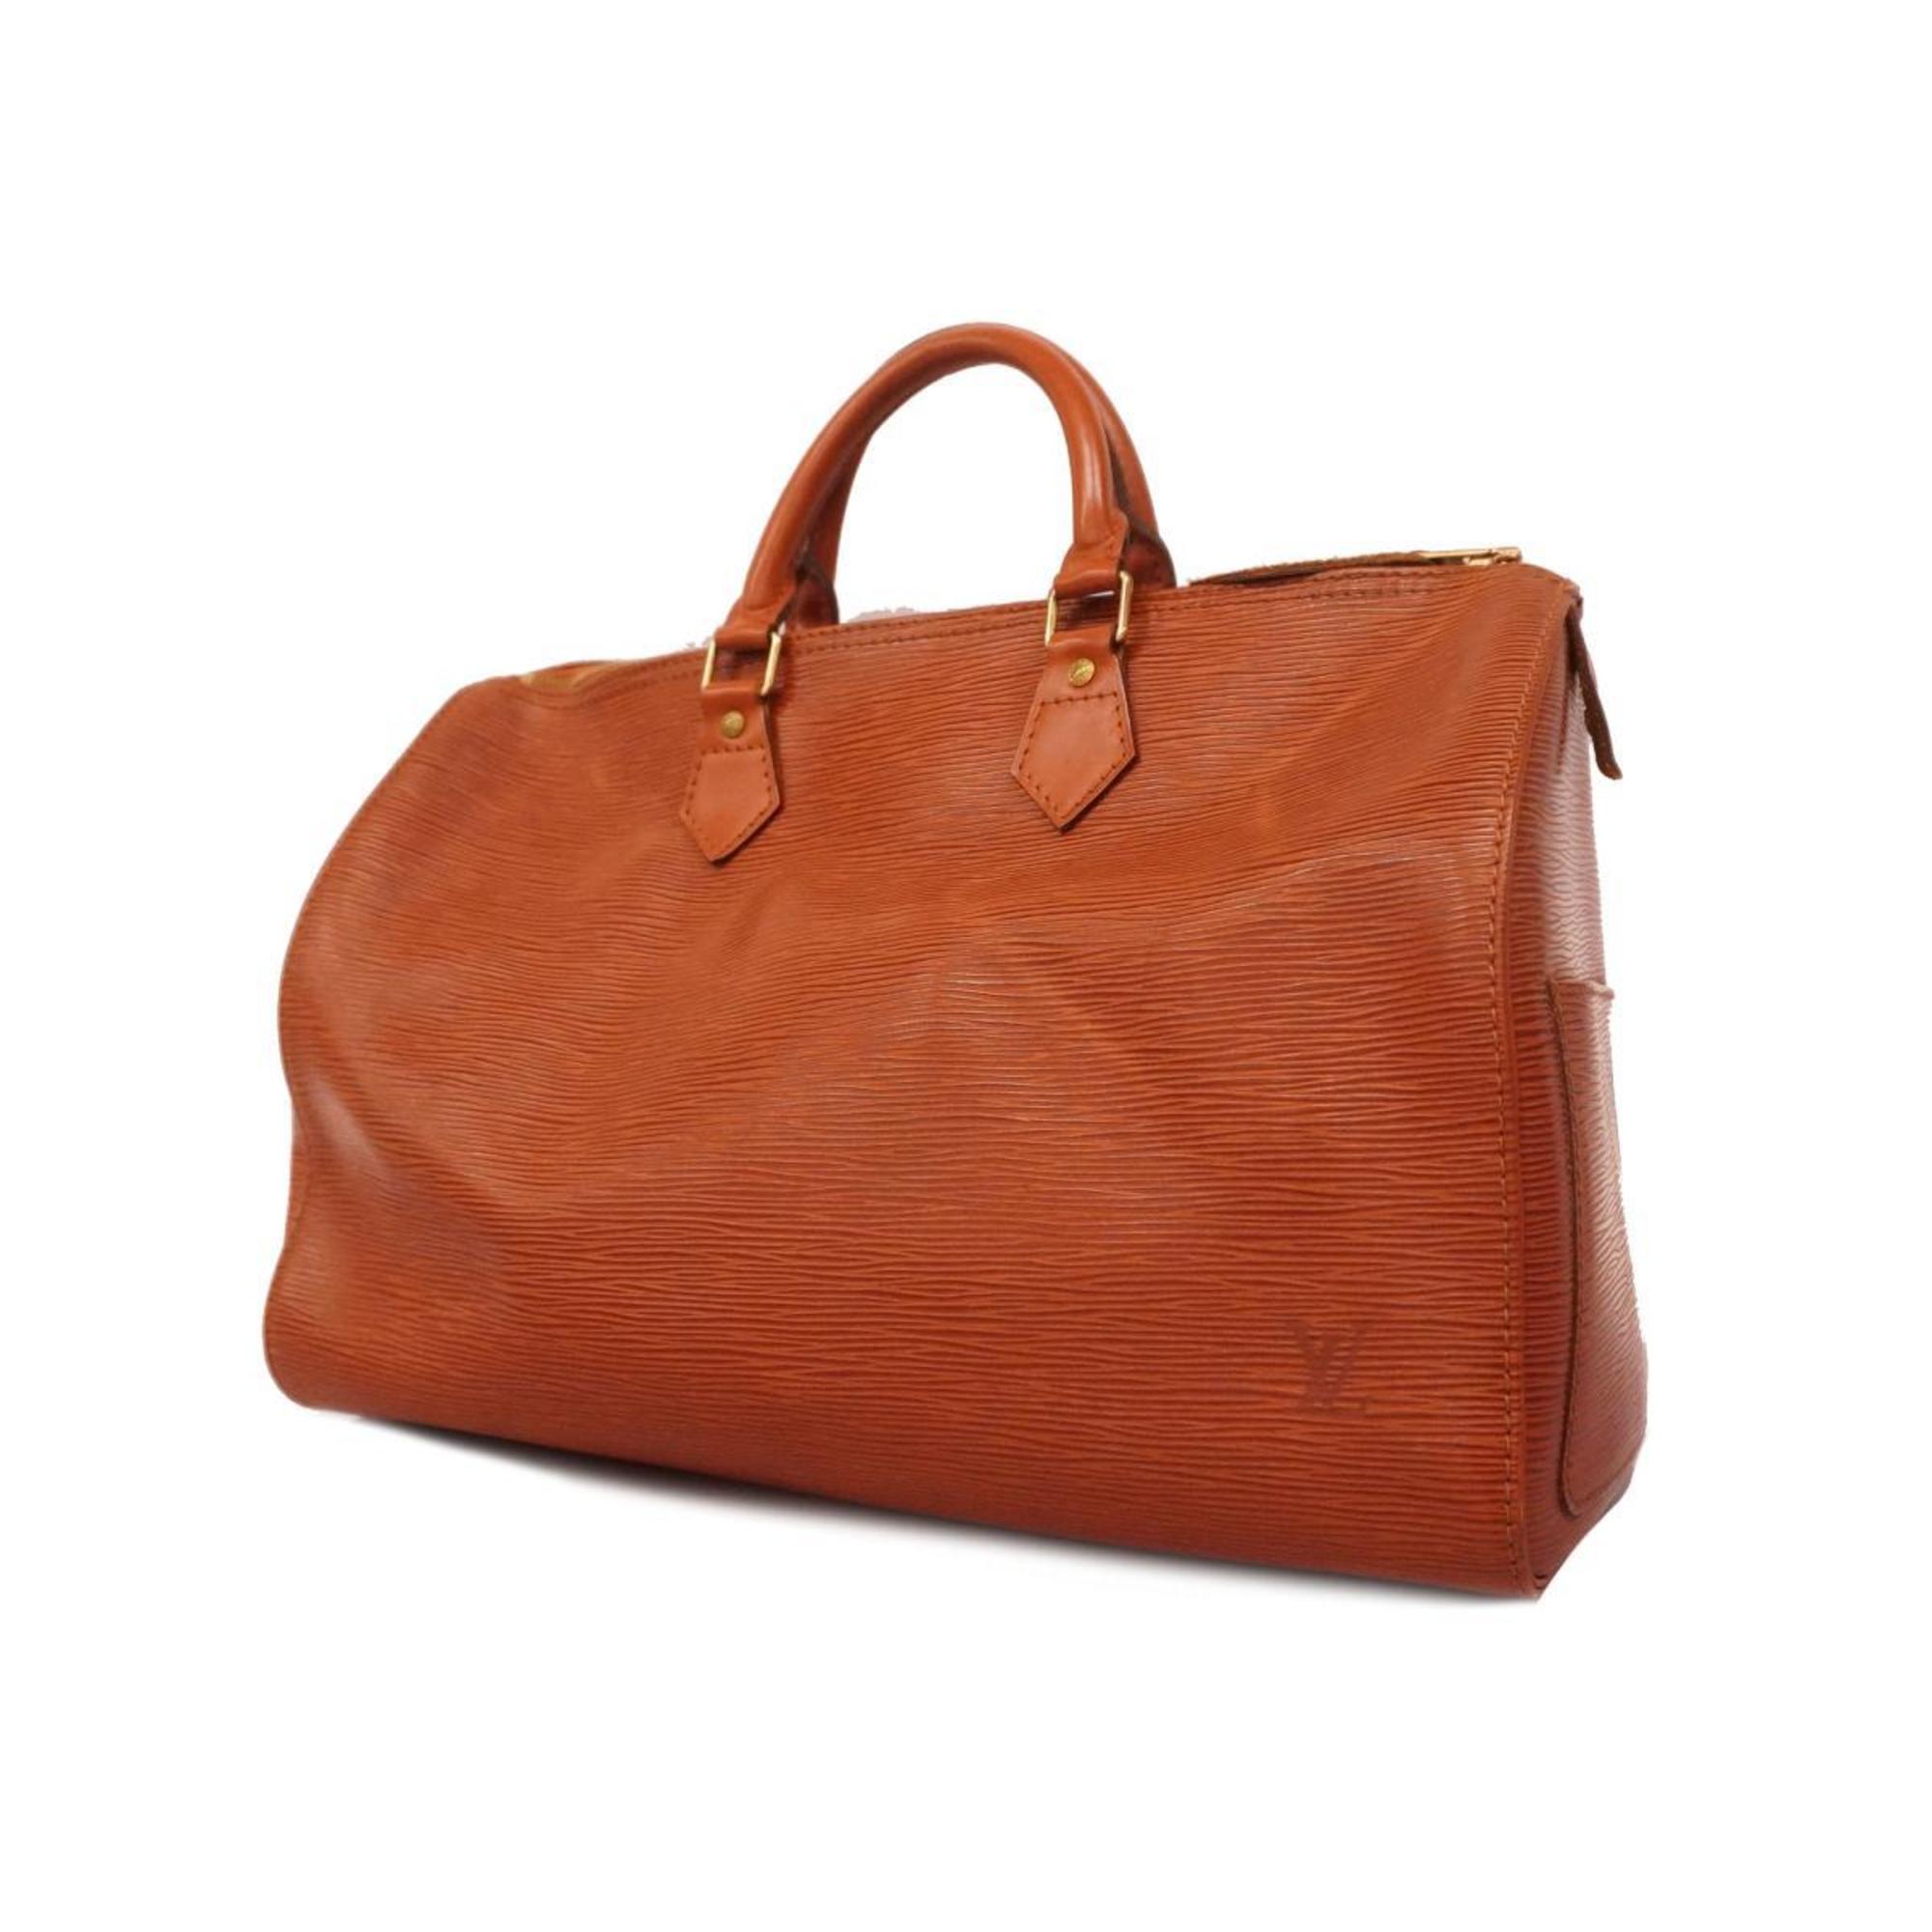 Louis Vuitton Handbag Epi Speedy 35 M42993 Kenyan Brown Ladies